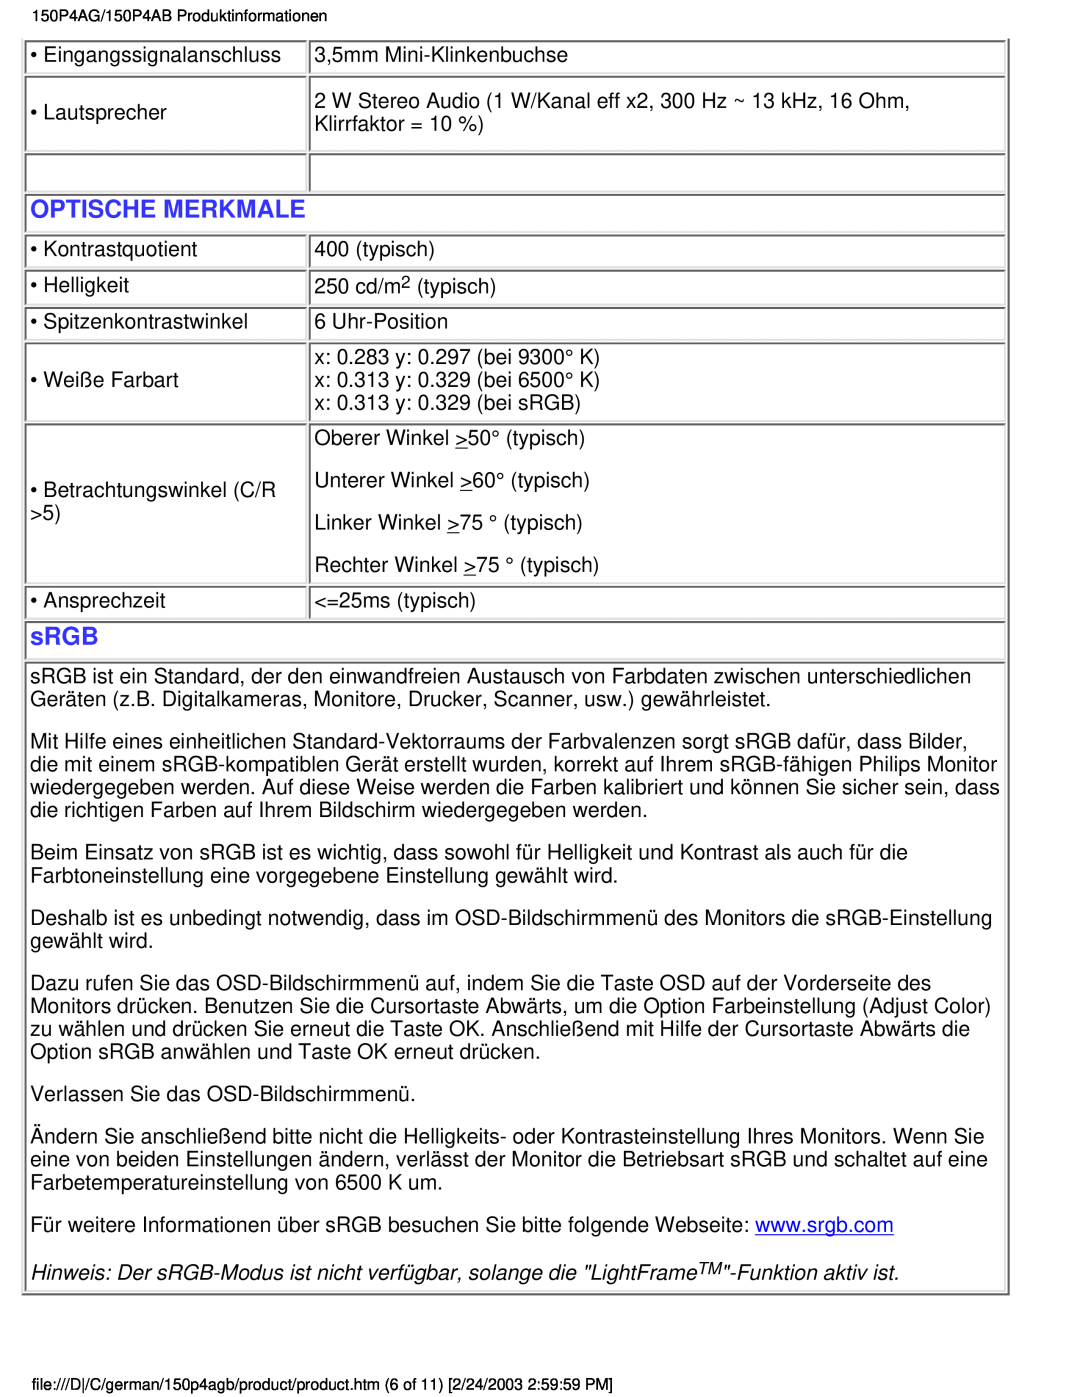 Philips 150P4AG, 150P4AB user manual Optische Merkmale, sRGB 